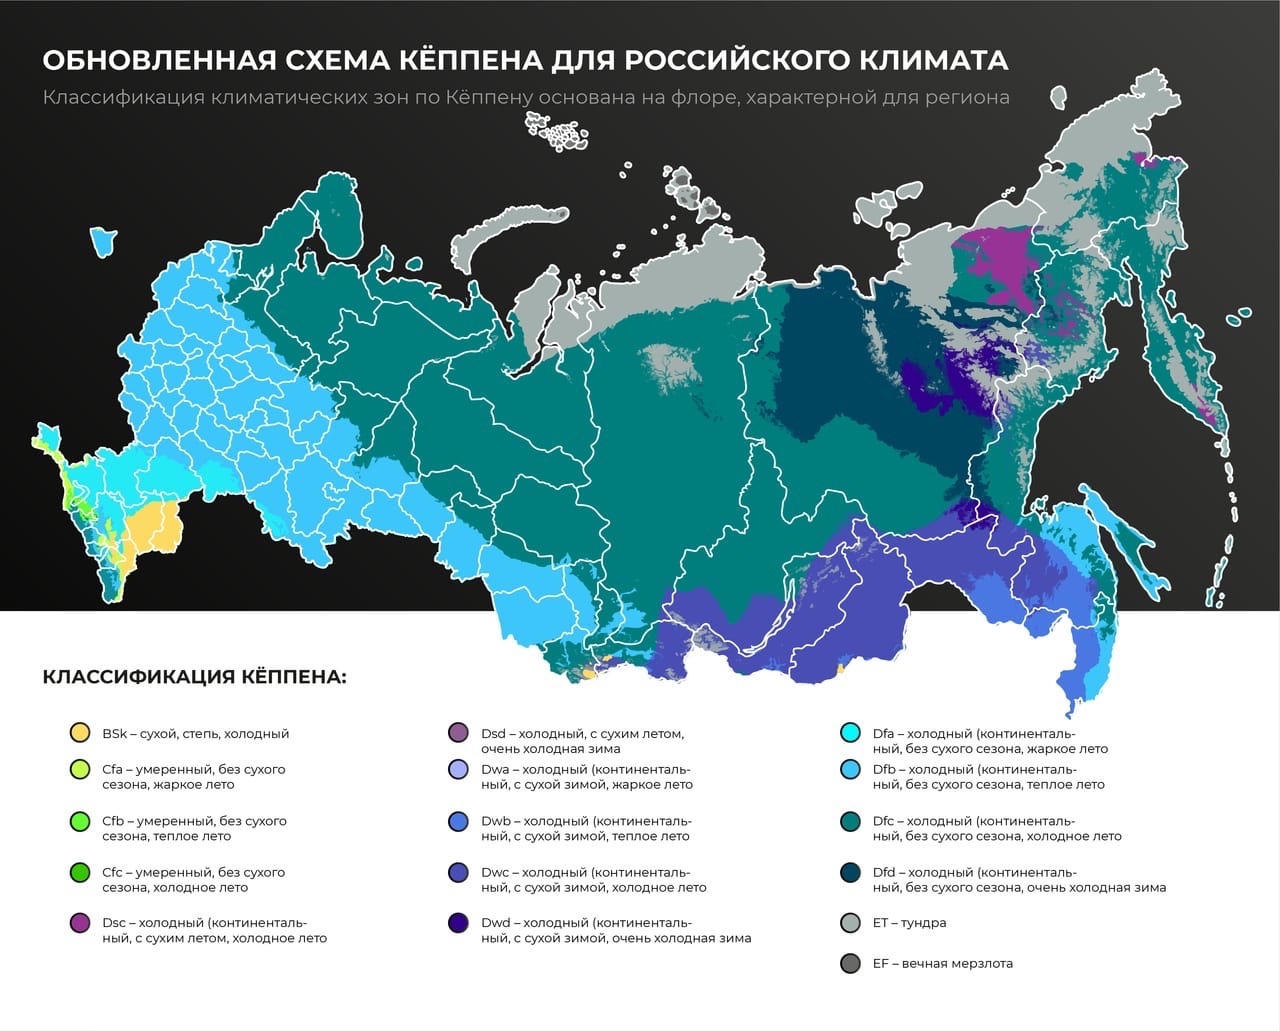 Классификация типов климата в России по Кеппену